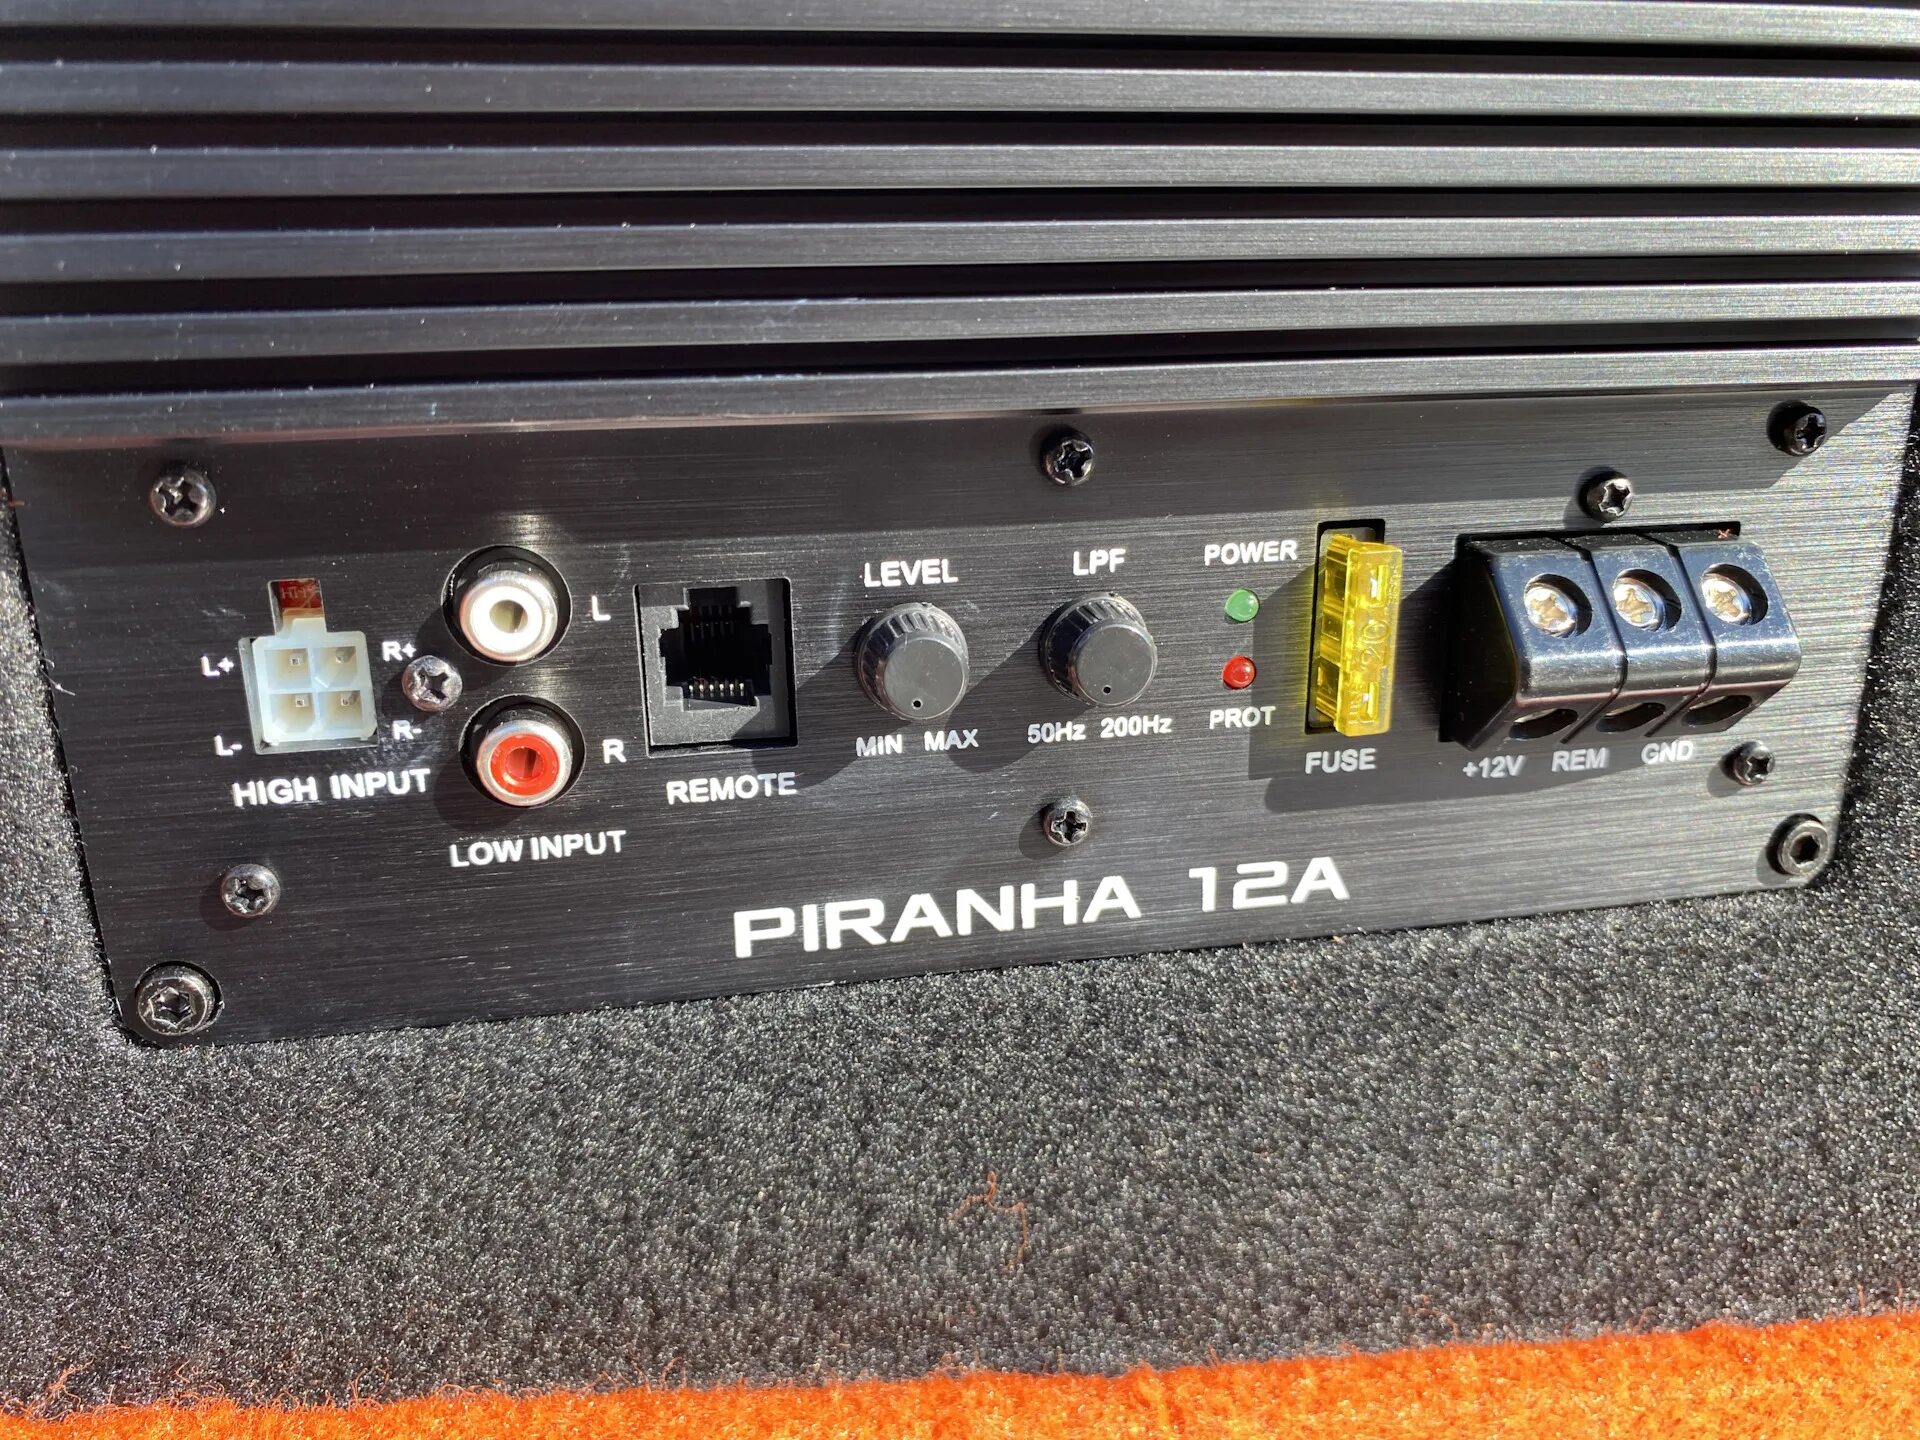 Dl barracuda 8 flat. DL Audio Barracuda 12a. DL Audio Barracuda 12a Flat. Сабвуфер DL Audio Piranha 12a. Сабвуфер DL Audio Piranha 12a Flat.